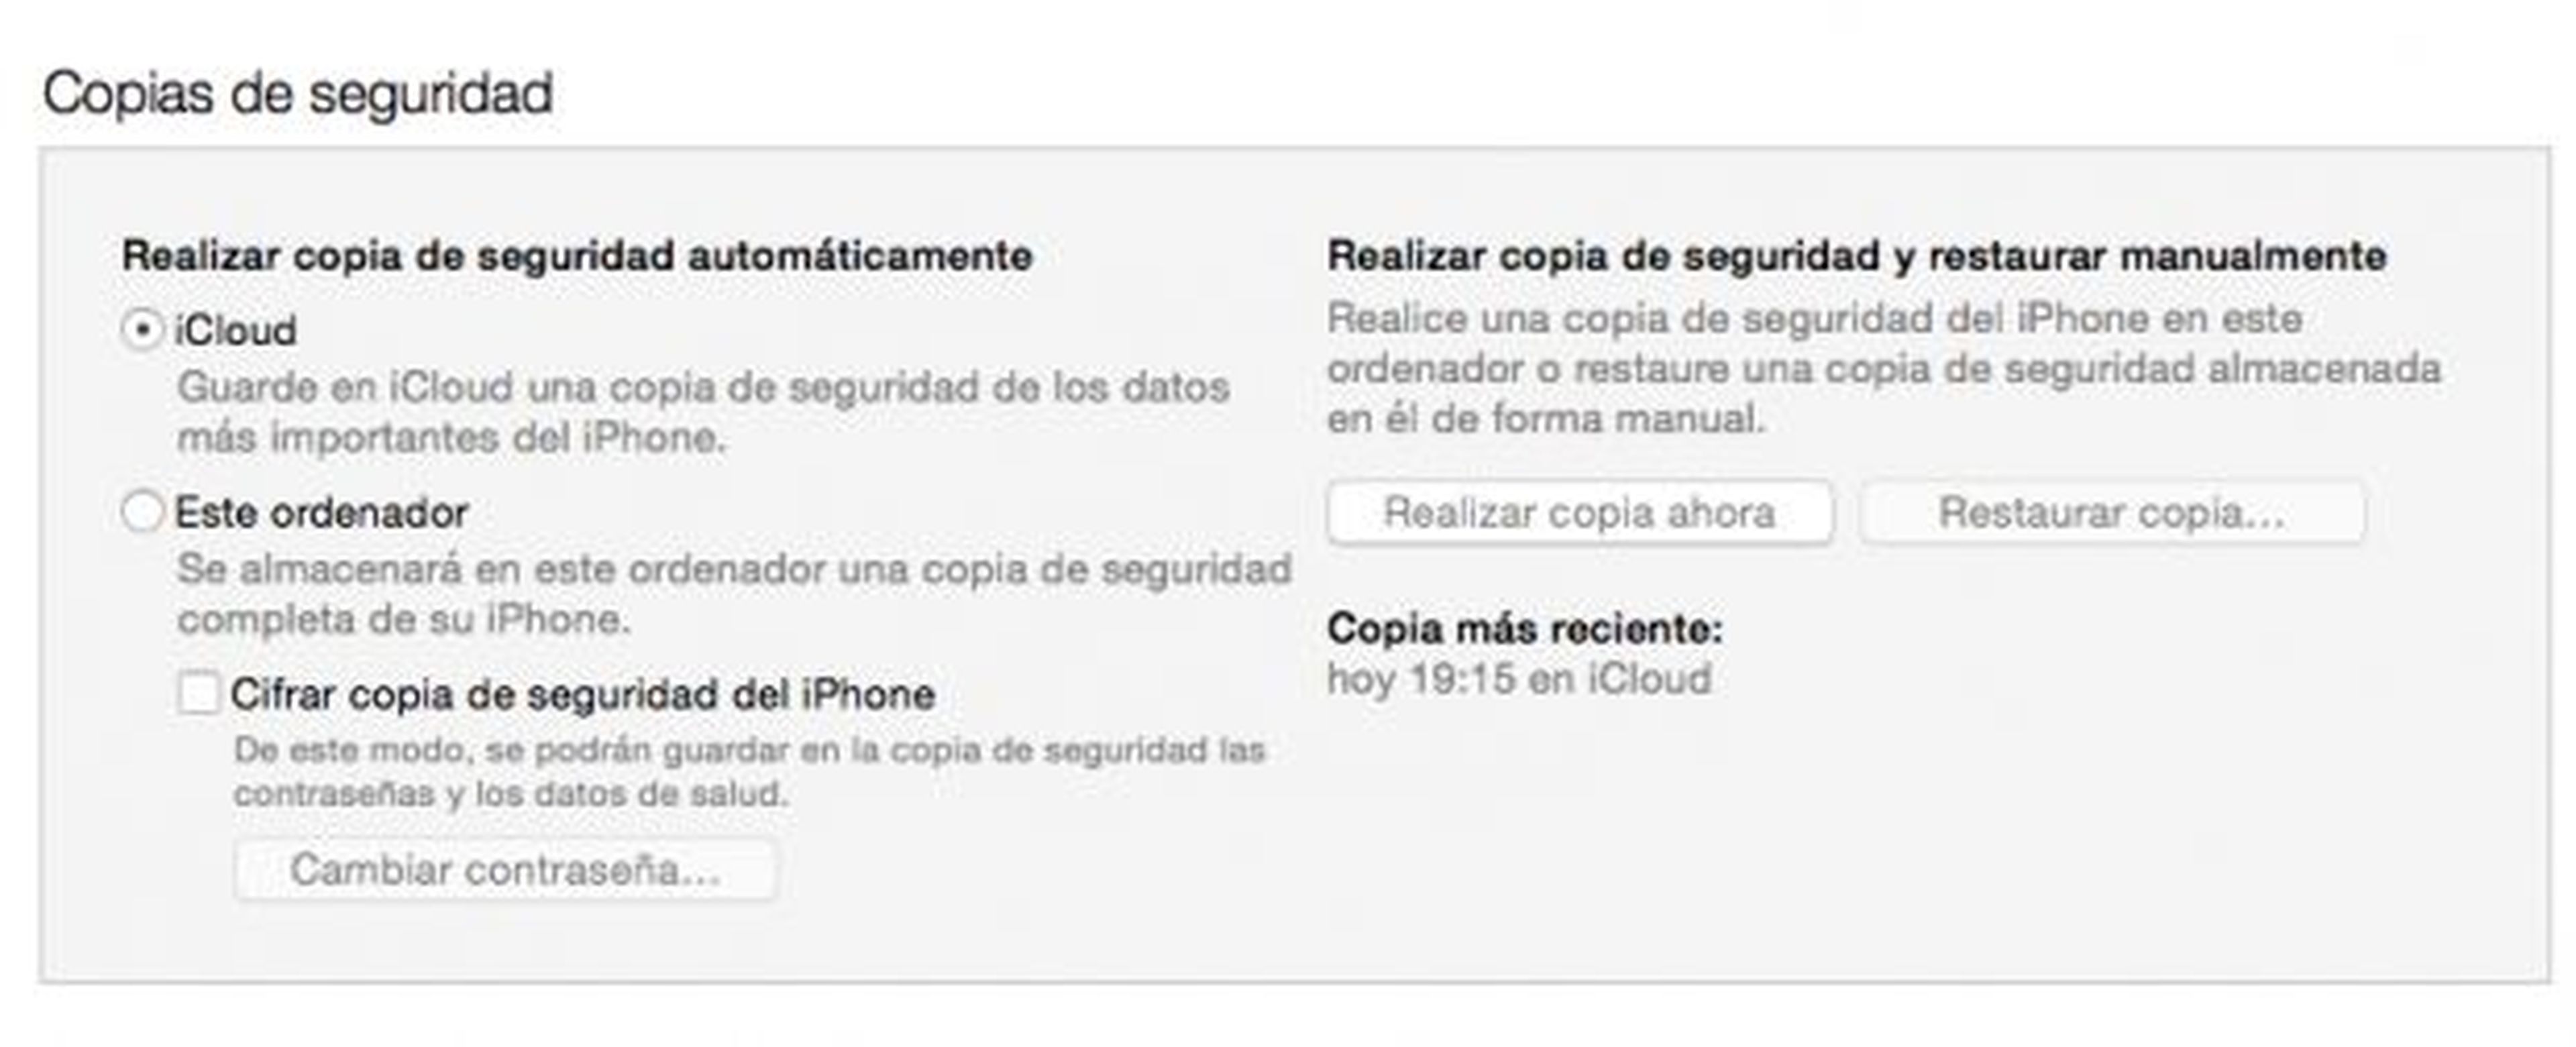 Cómo instalar iOS 9 vía OTA o vía iTunes en iPhone y iPad